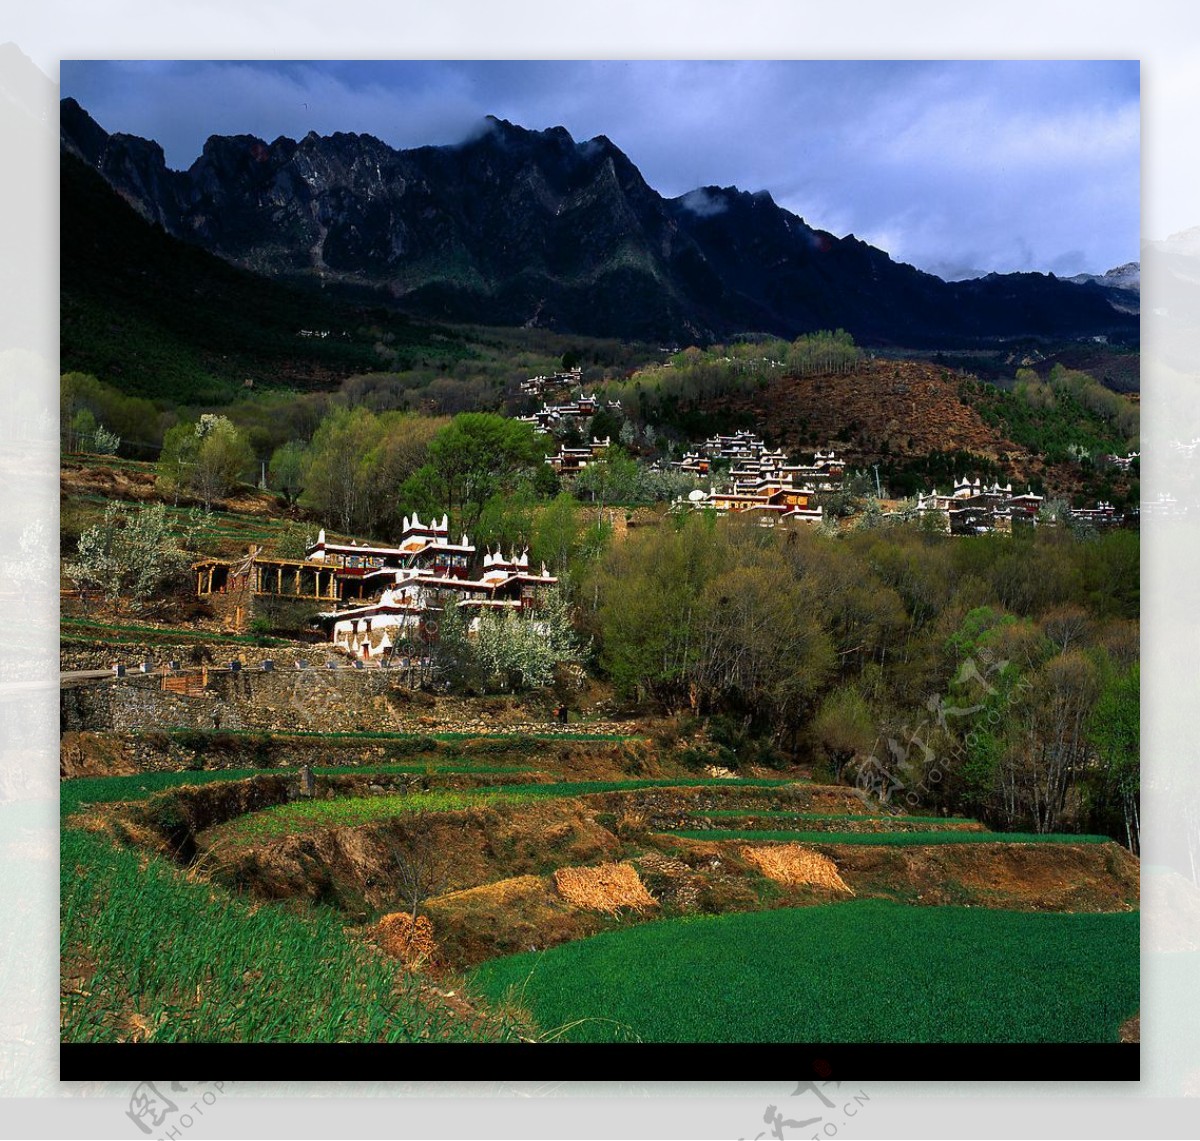 丹巴甲居藏寨图片